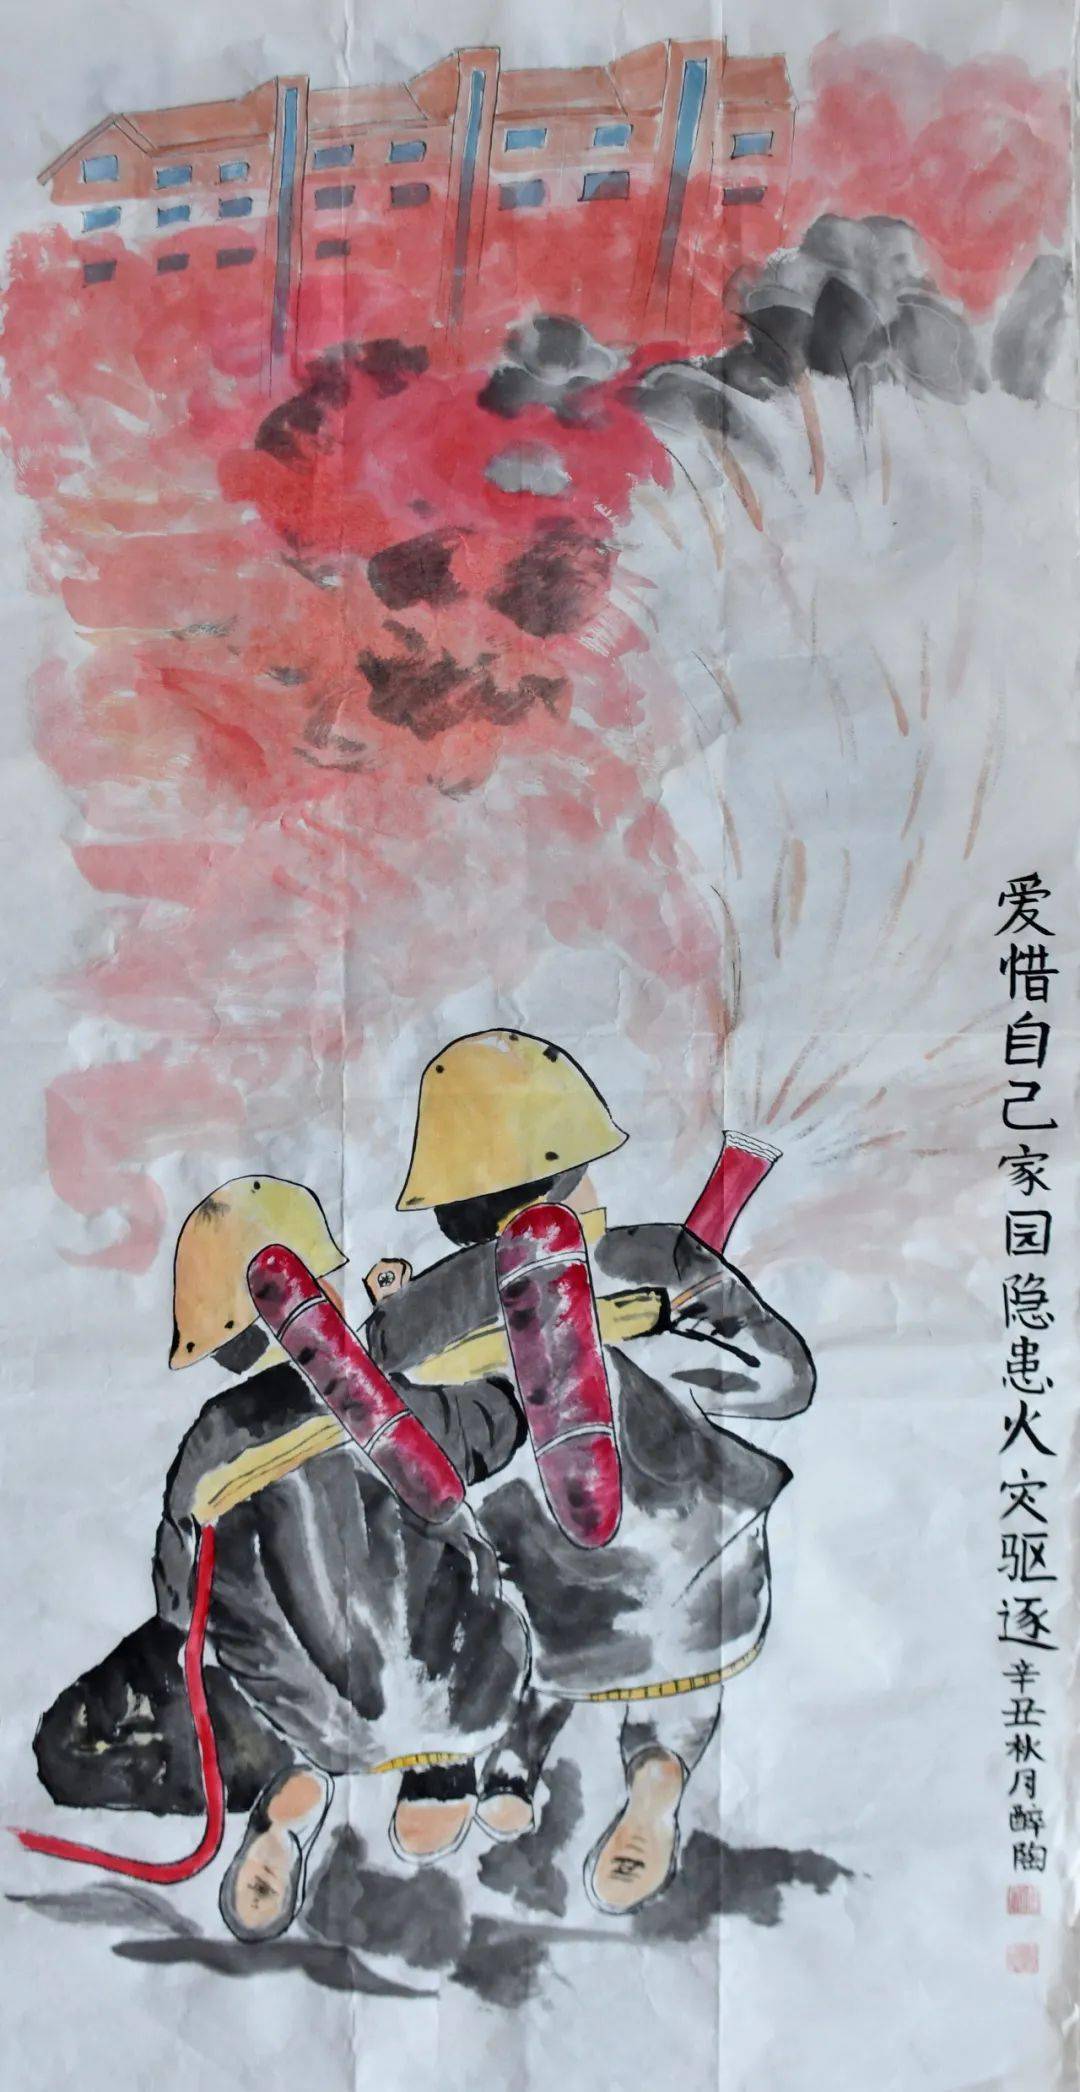 2021年第一届"翰墨飘香绘消防,安全意识伴身旁"消防题材绘画入围作品